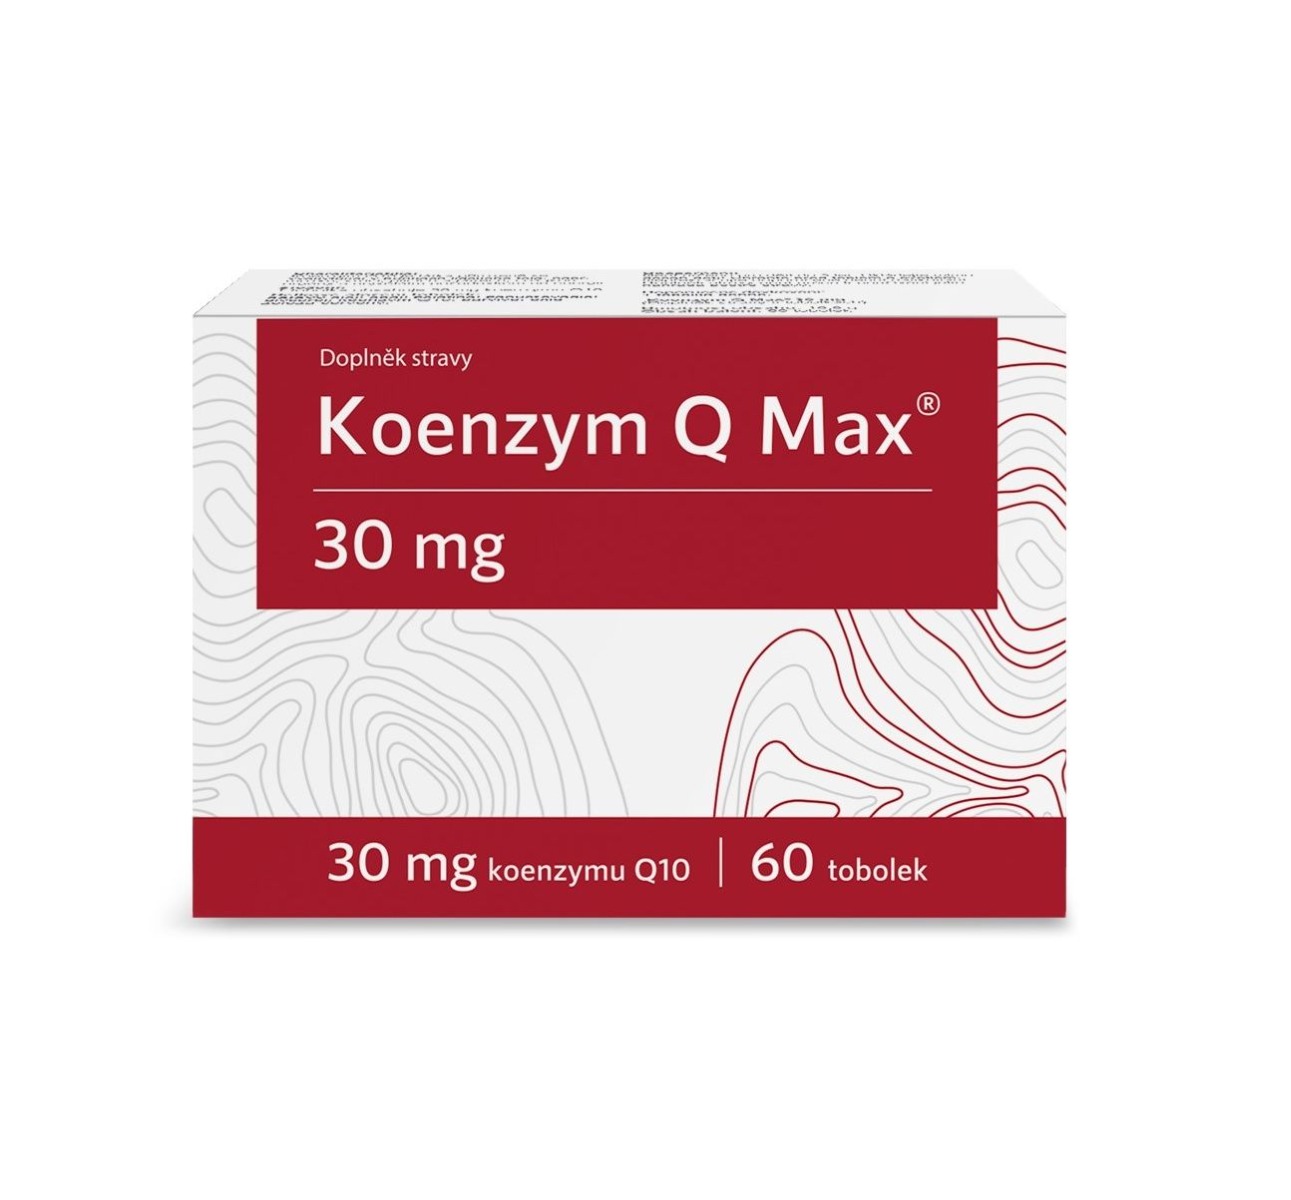 Koenzym Q Max 30 mg 60 tobolek Koenzym Q Max